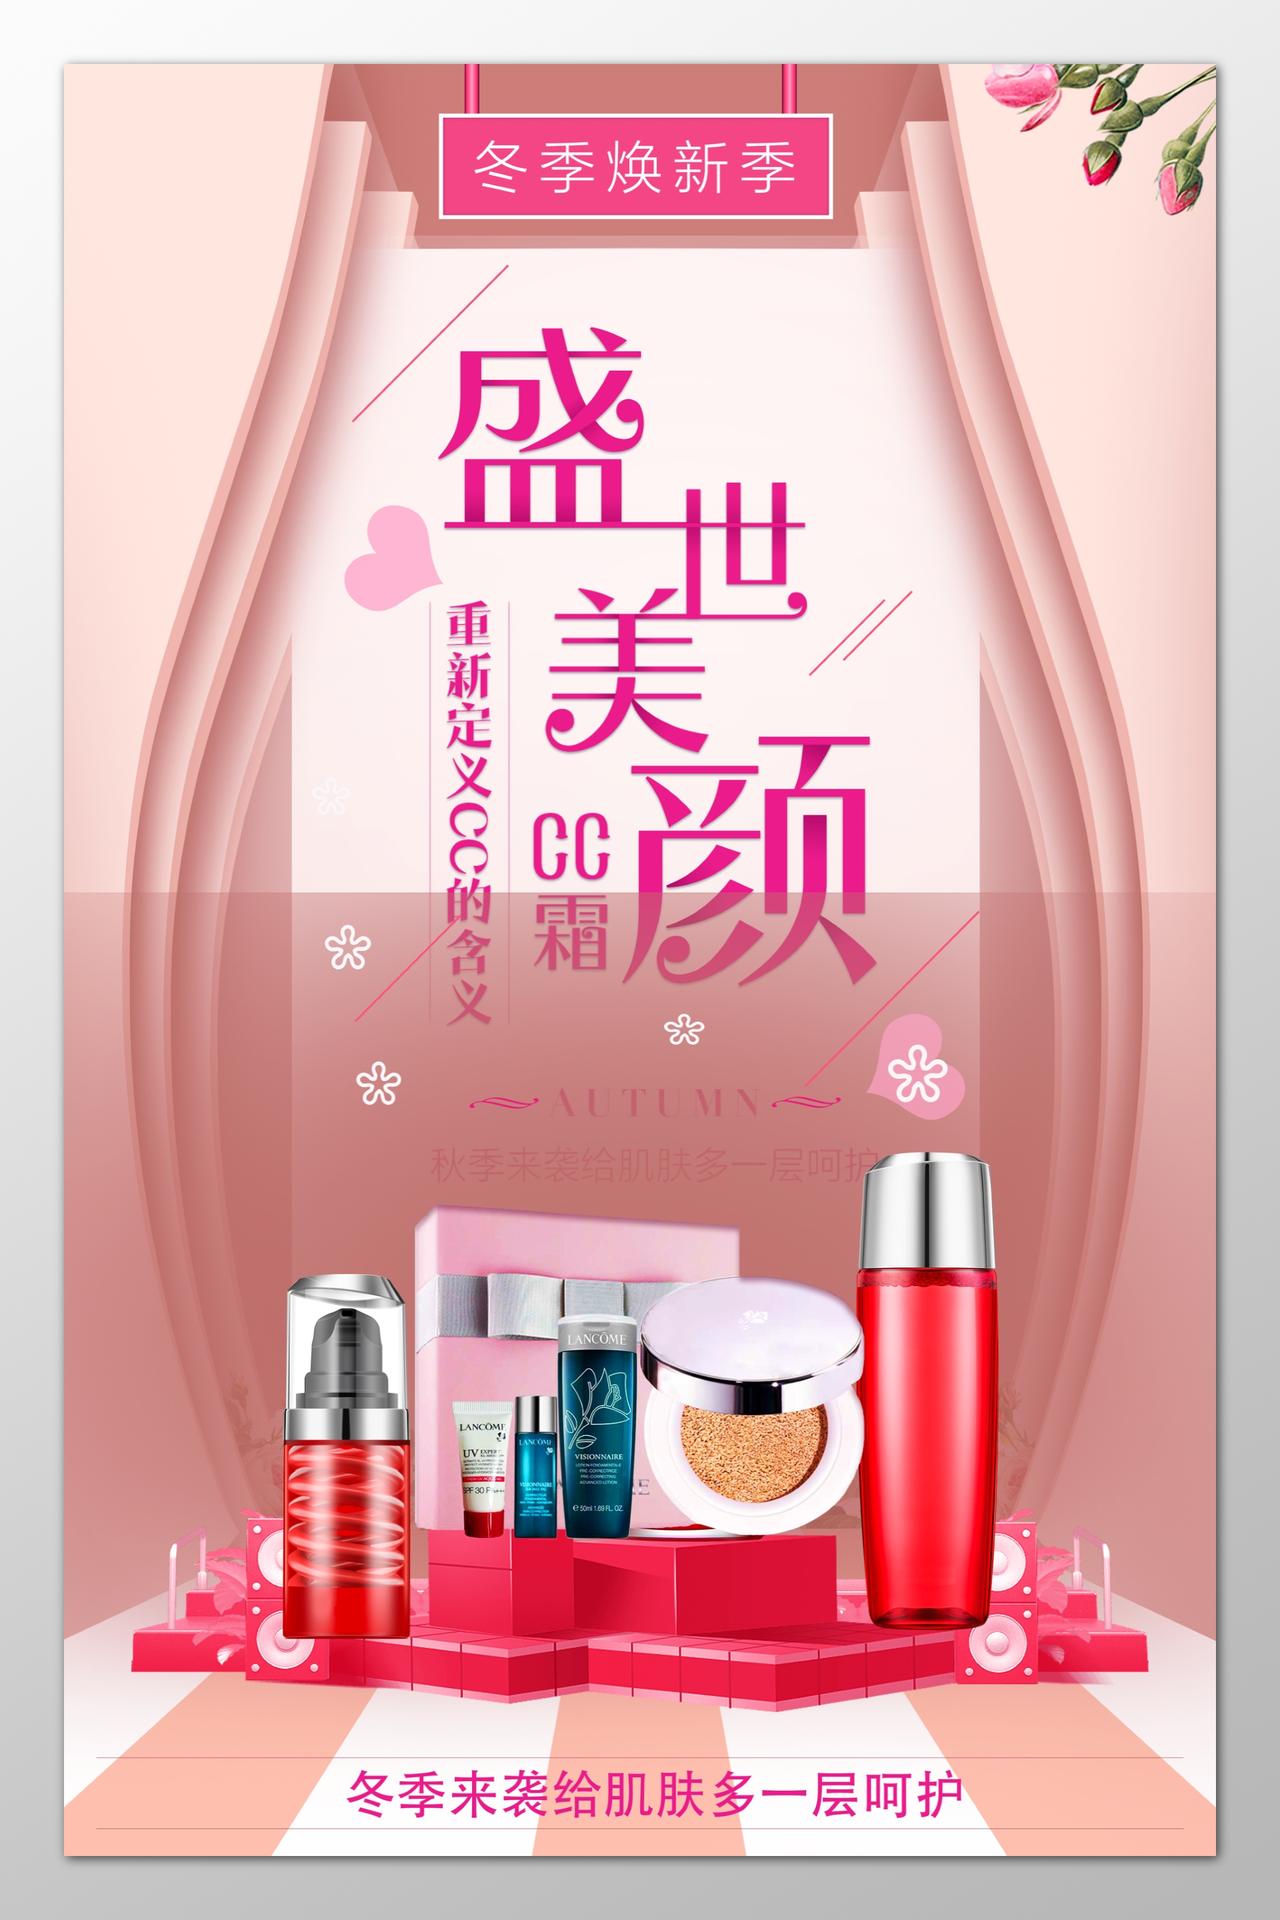 冬季美颜护肤化妆美容彩妆促销优惠粉色海报模板